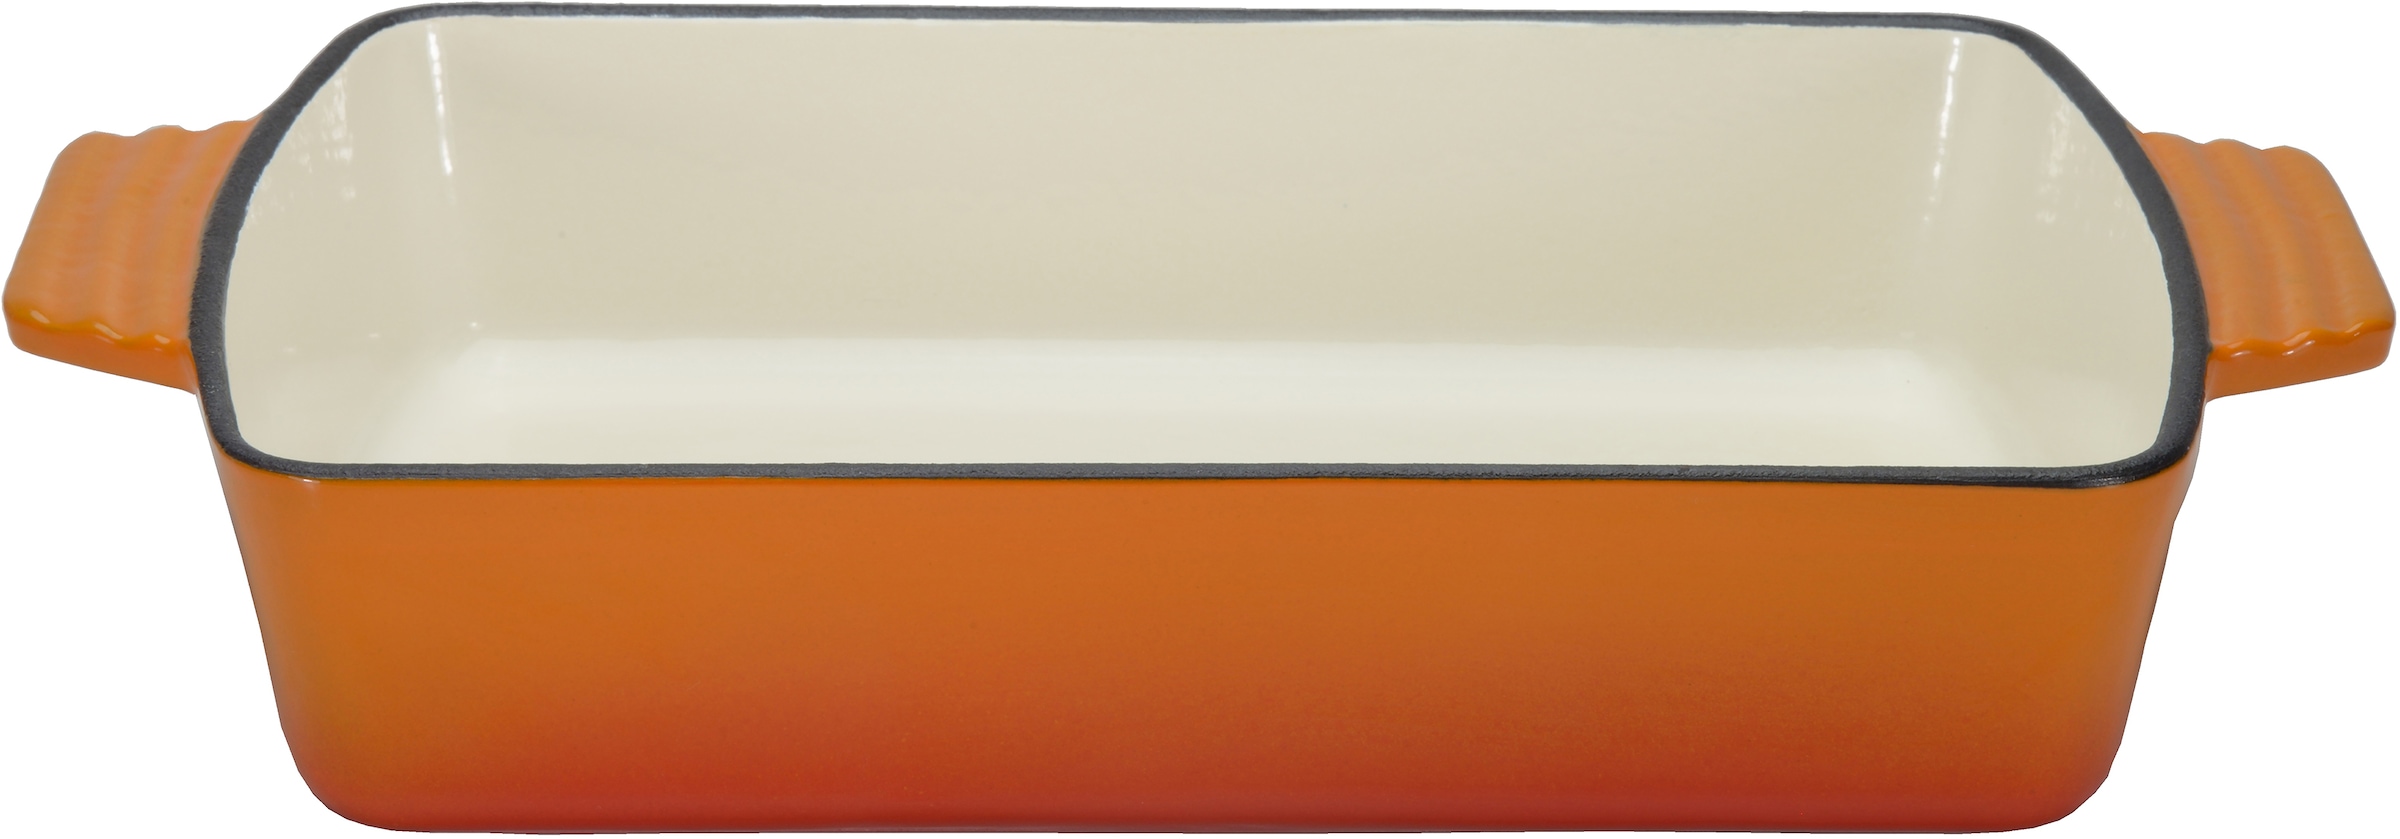 Auflaufform »Orange Shadow«, Gusseisen, 3,8 Liter, für gleichmäßige Wärmeverteilung...